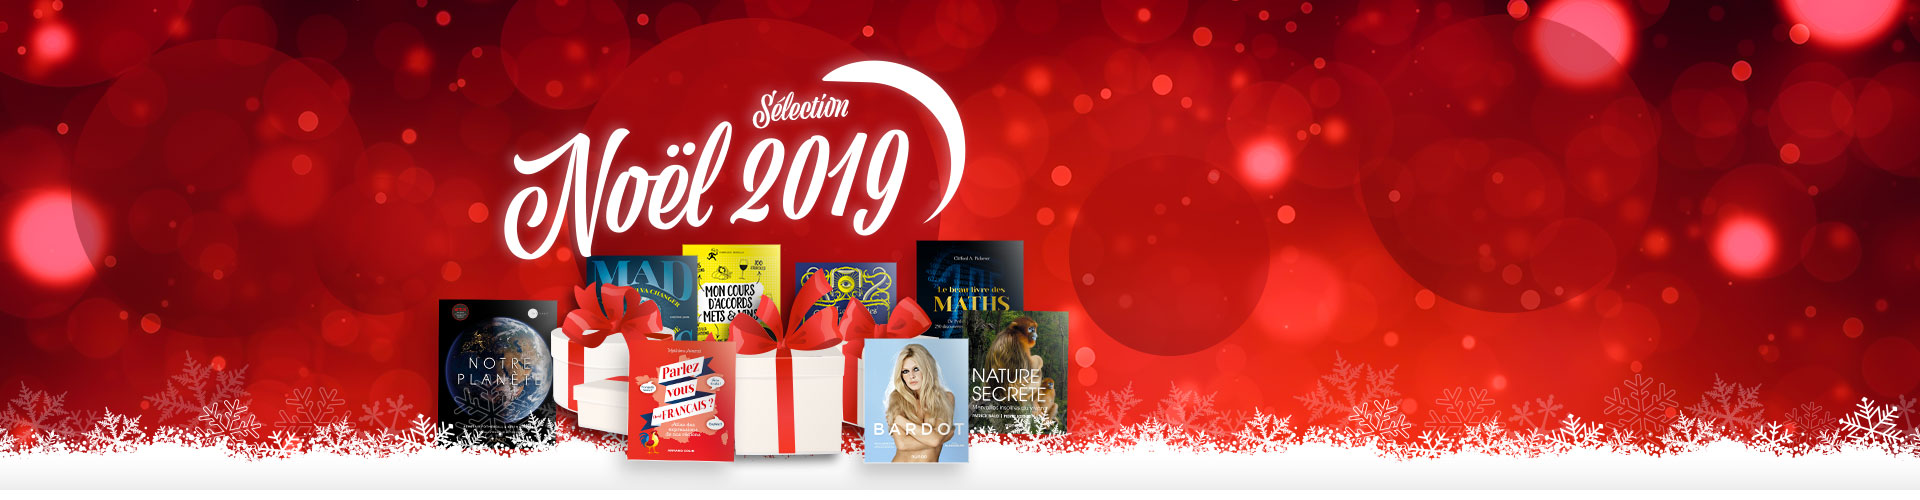 Fin d’année : Sélection de livres cadeaux Dunod - Noel 2019